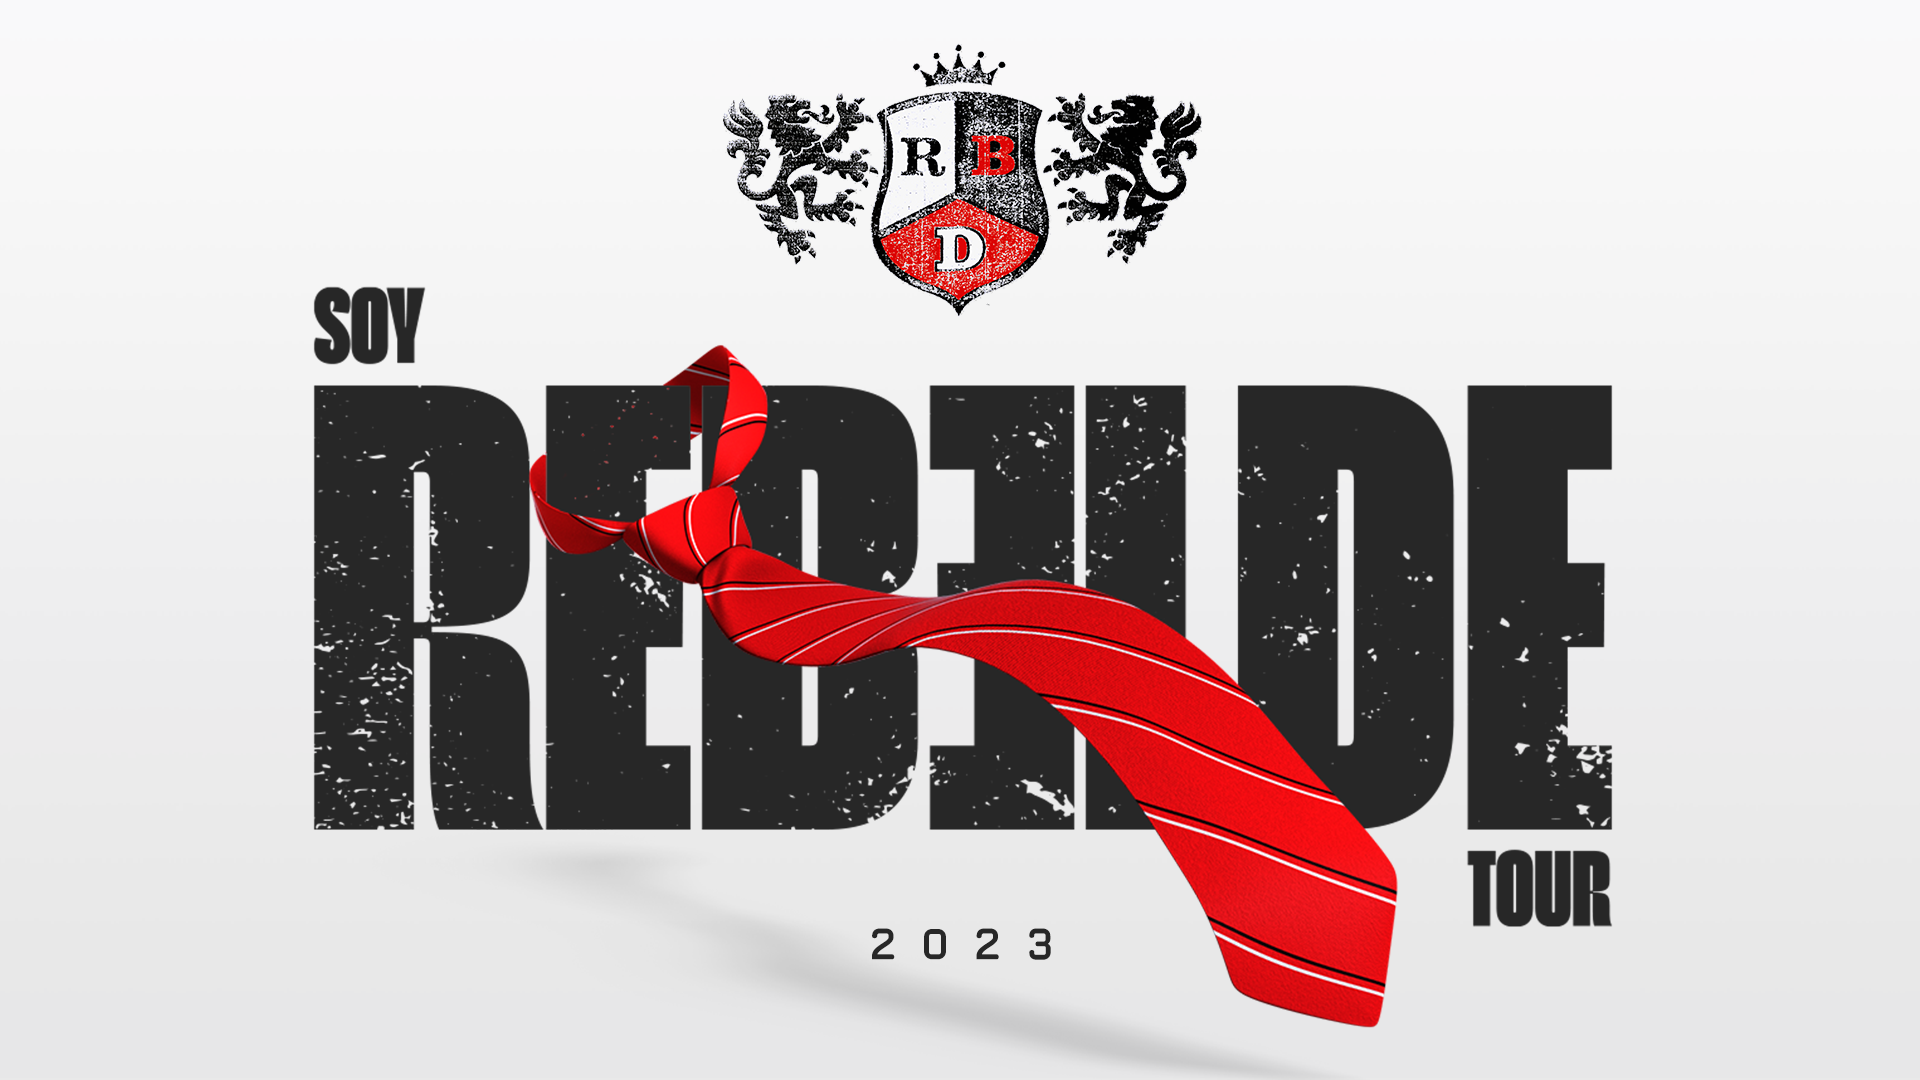 rbd soy rebelde tour 2023